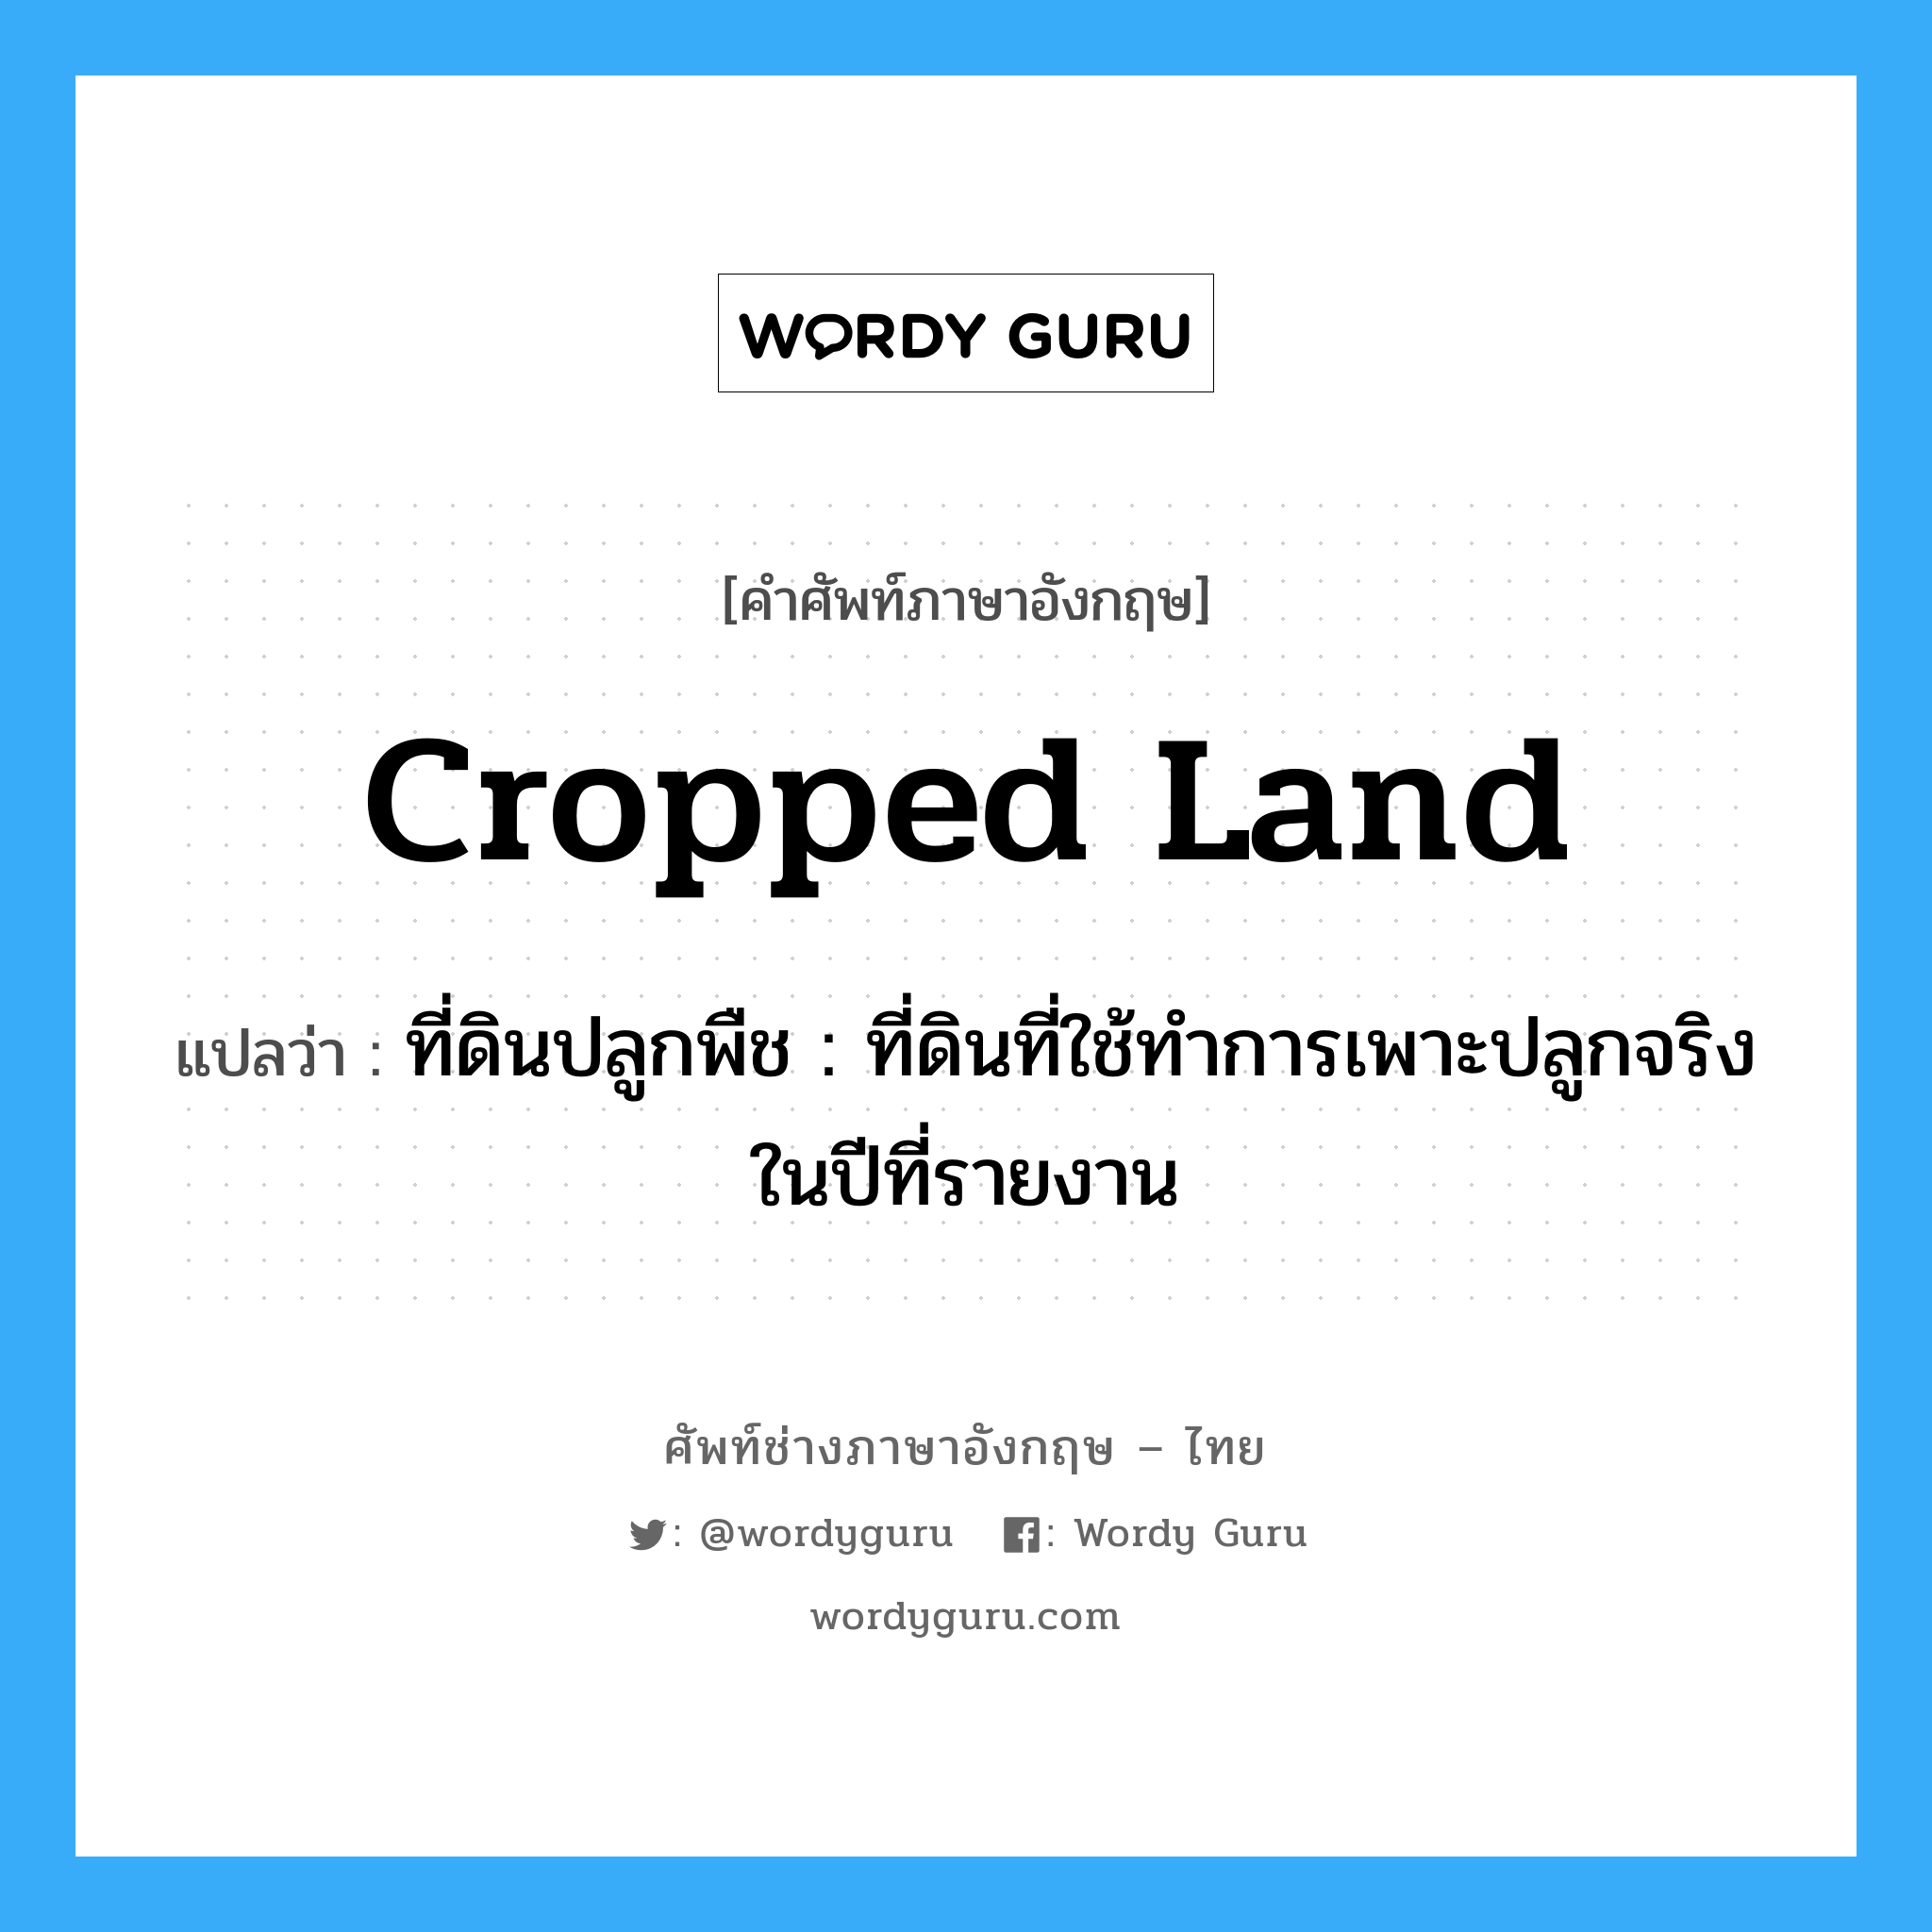 cropped land แปลว่า?, คำศัพท์ช่างภาษาอังกฤษ - ไทย cropped land คำศัพท์ภาษาอังกฤษ cropped land แปลว่า ที่ดินปลูกพืช : ที่ดินที่ใช้ทำการเพาะปลูกจริงในปีที่รายงาน